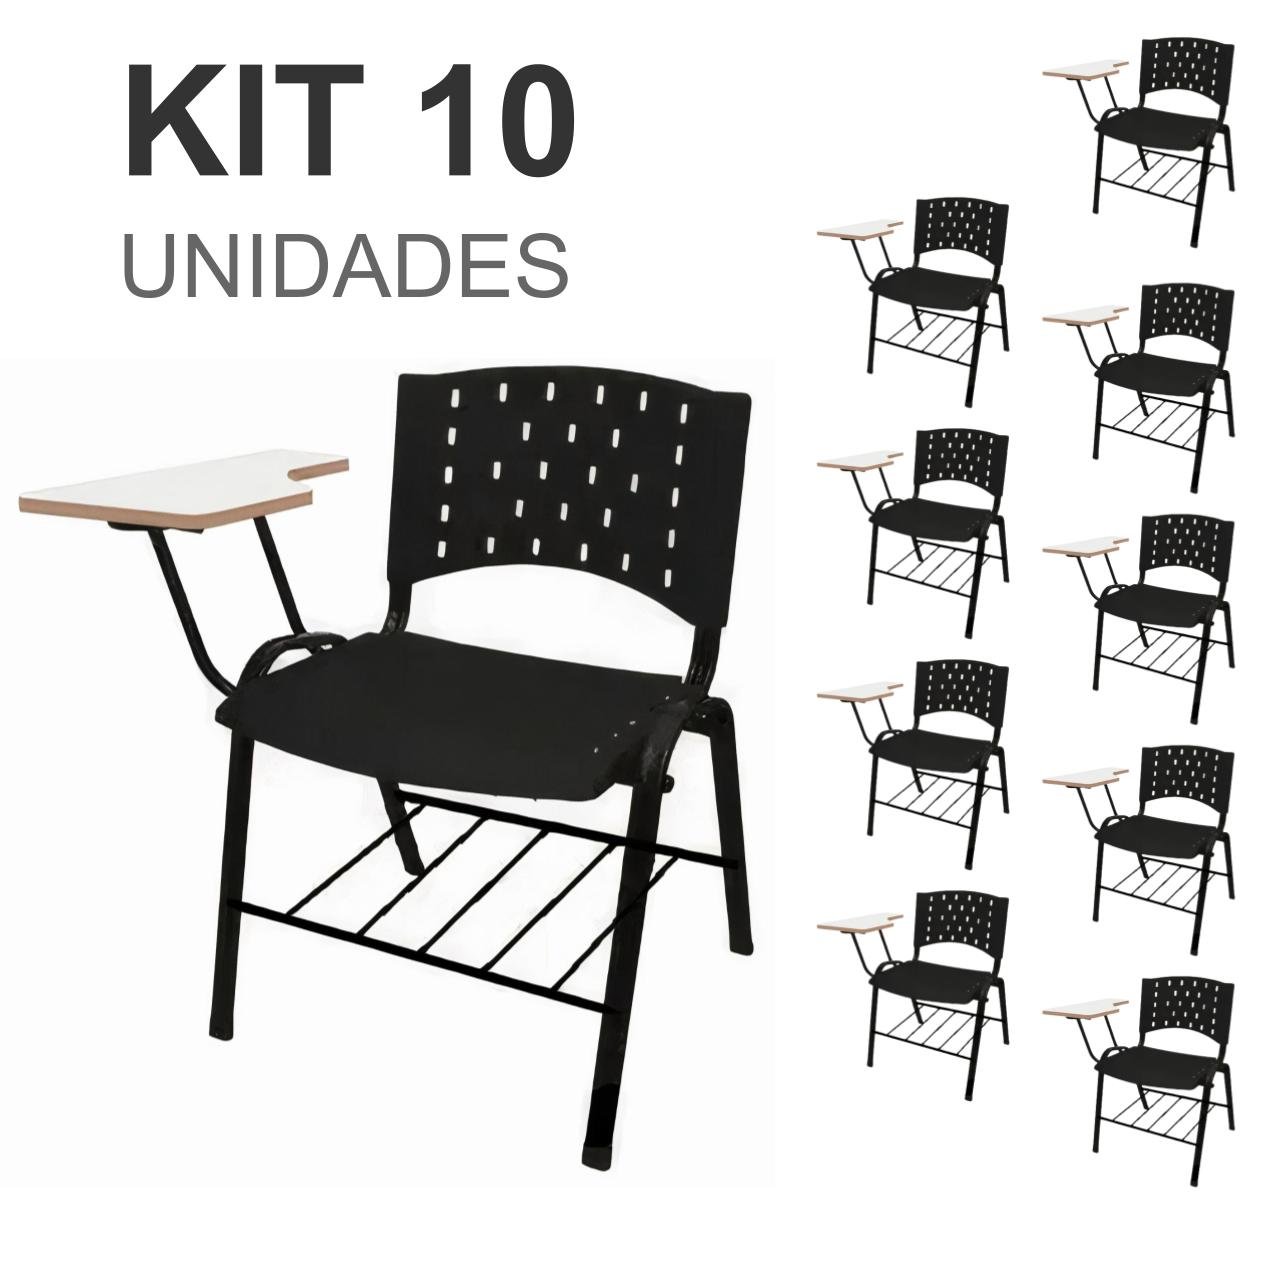 KIT 10 Cadeiras Universitárias c/ prancheta com porta livros - 32011